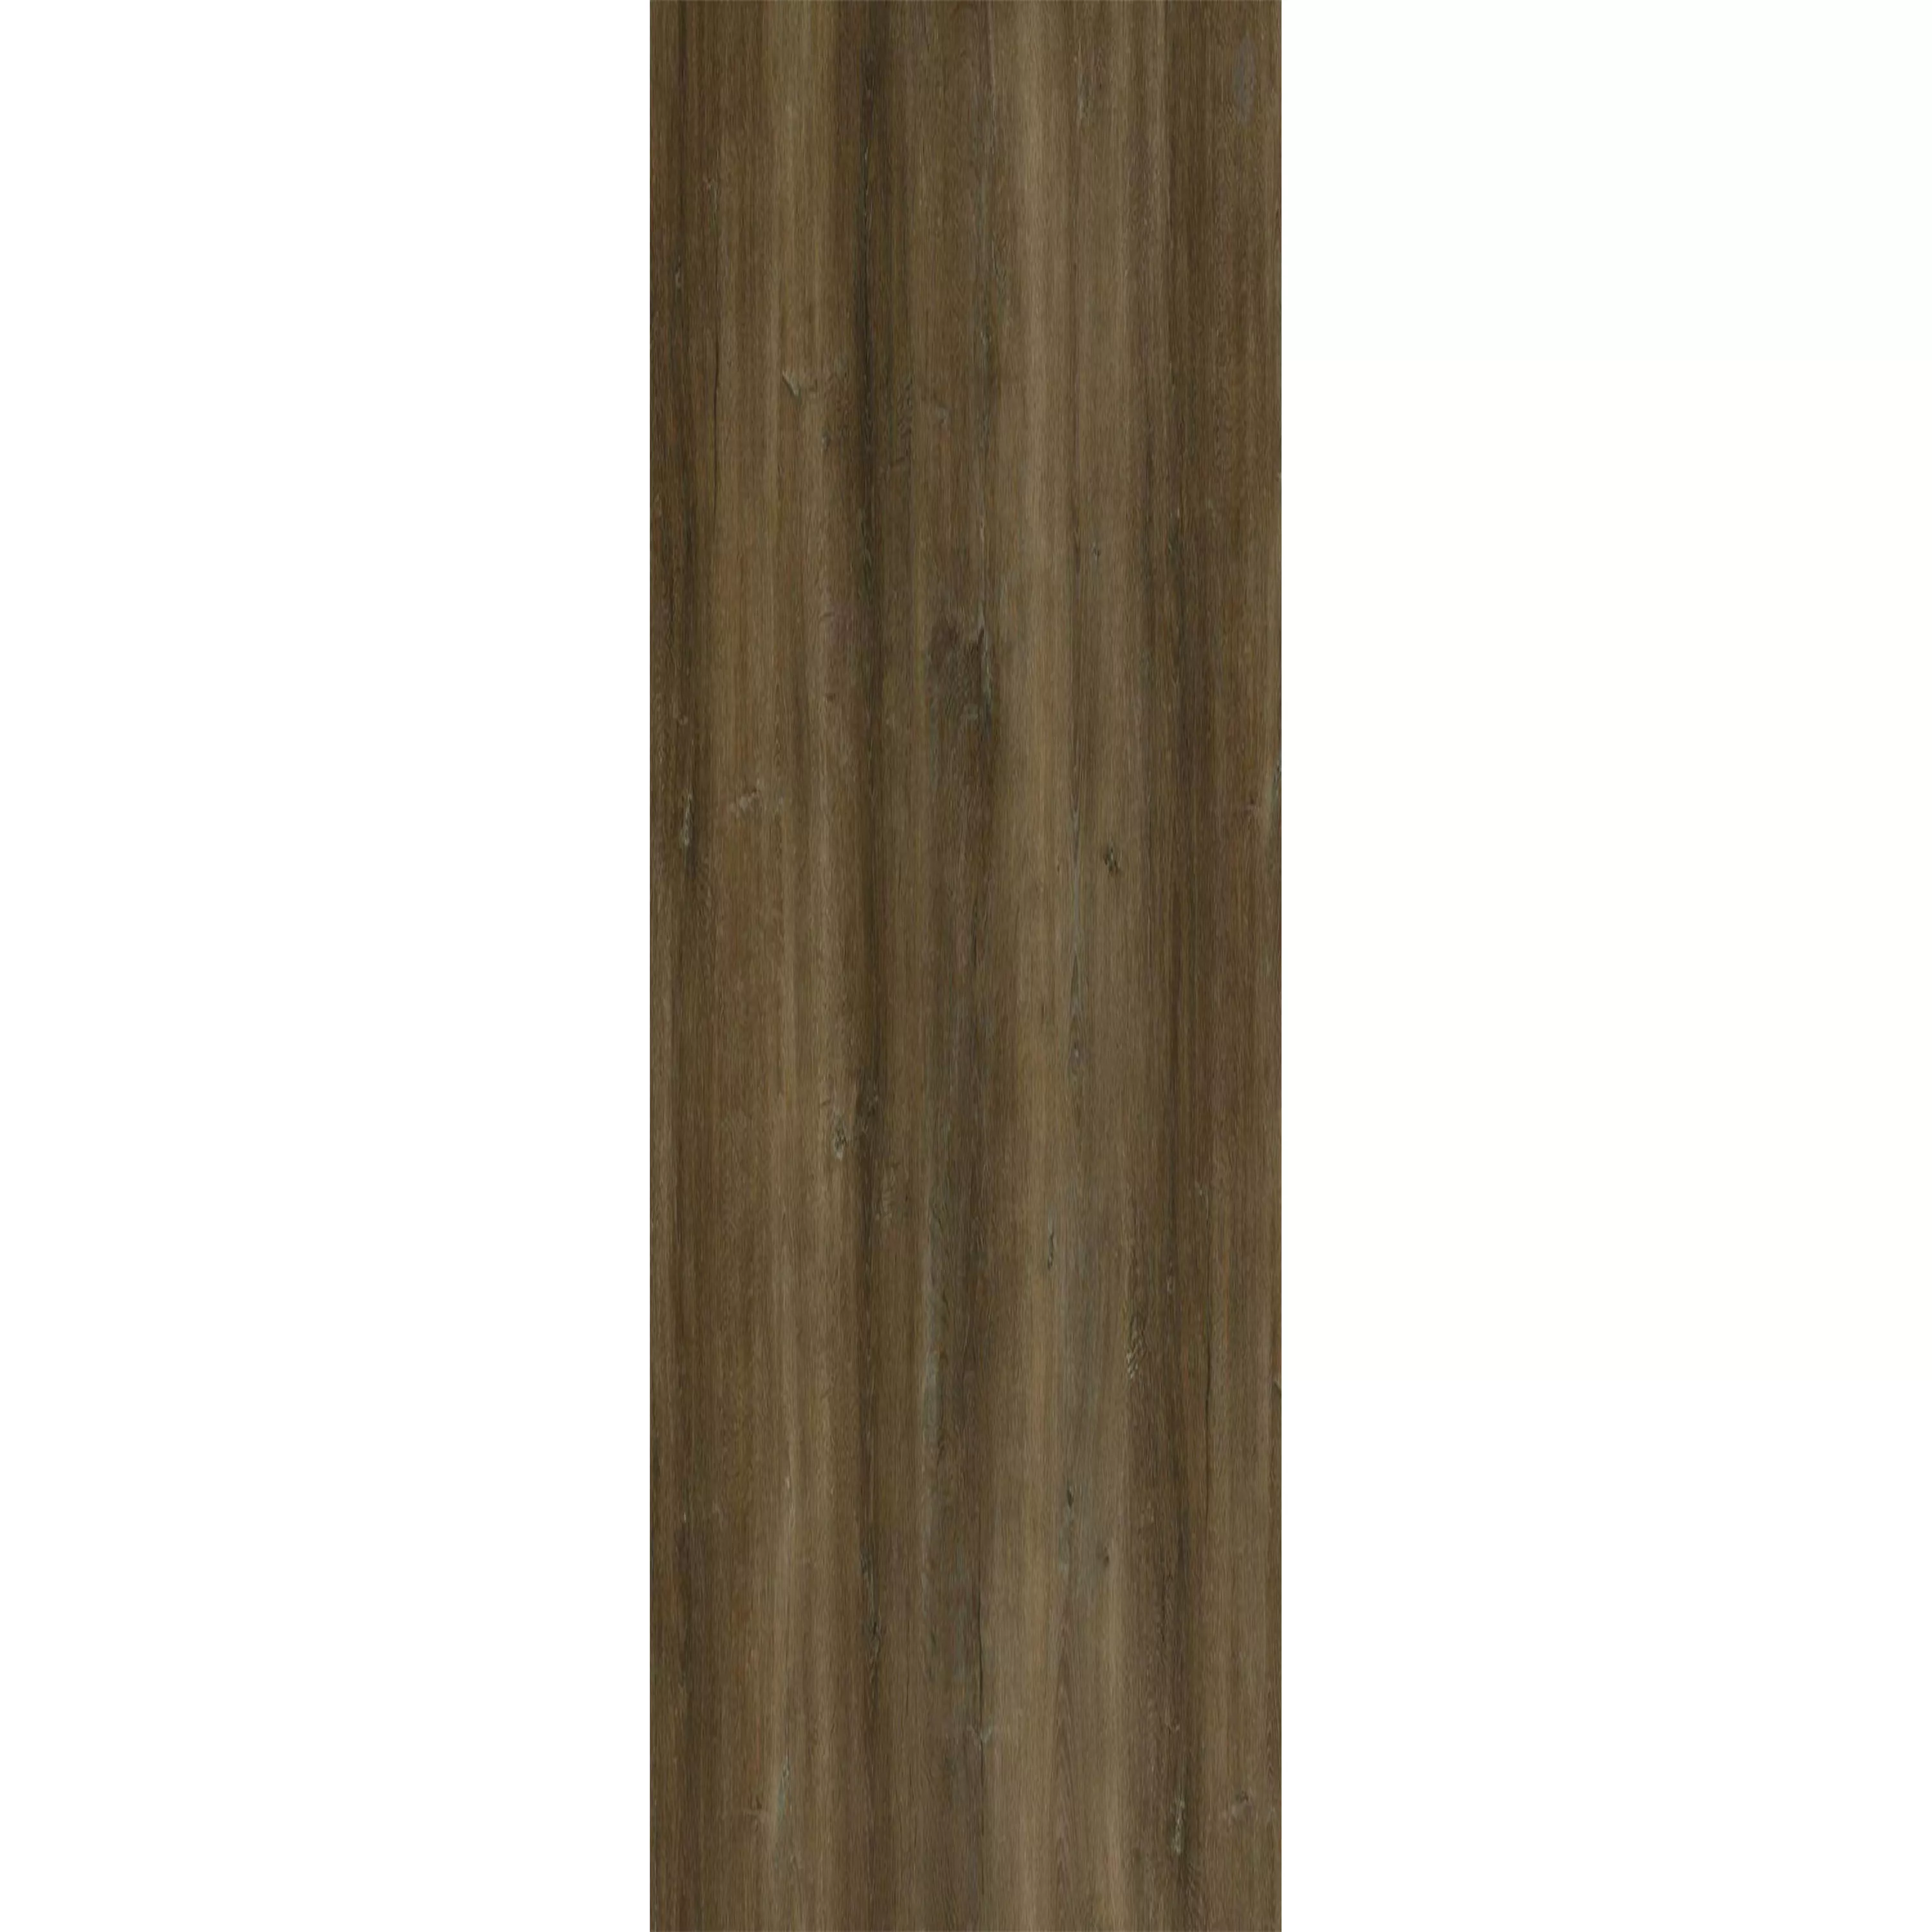 Δάπεδο Από Bινύλιο Σύστημα Κλικ Reedley Kαφέ 17,2x121cm